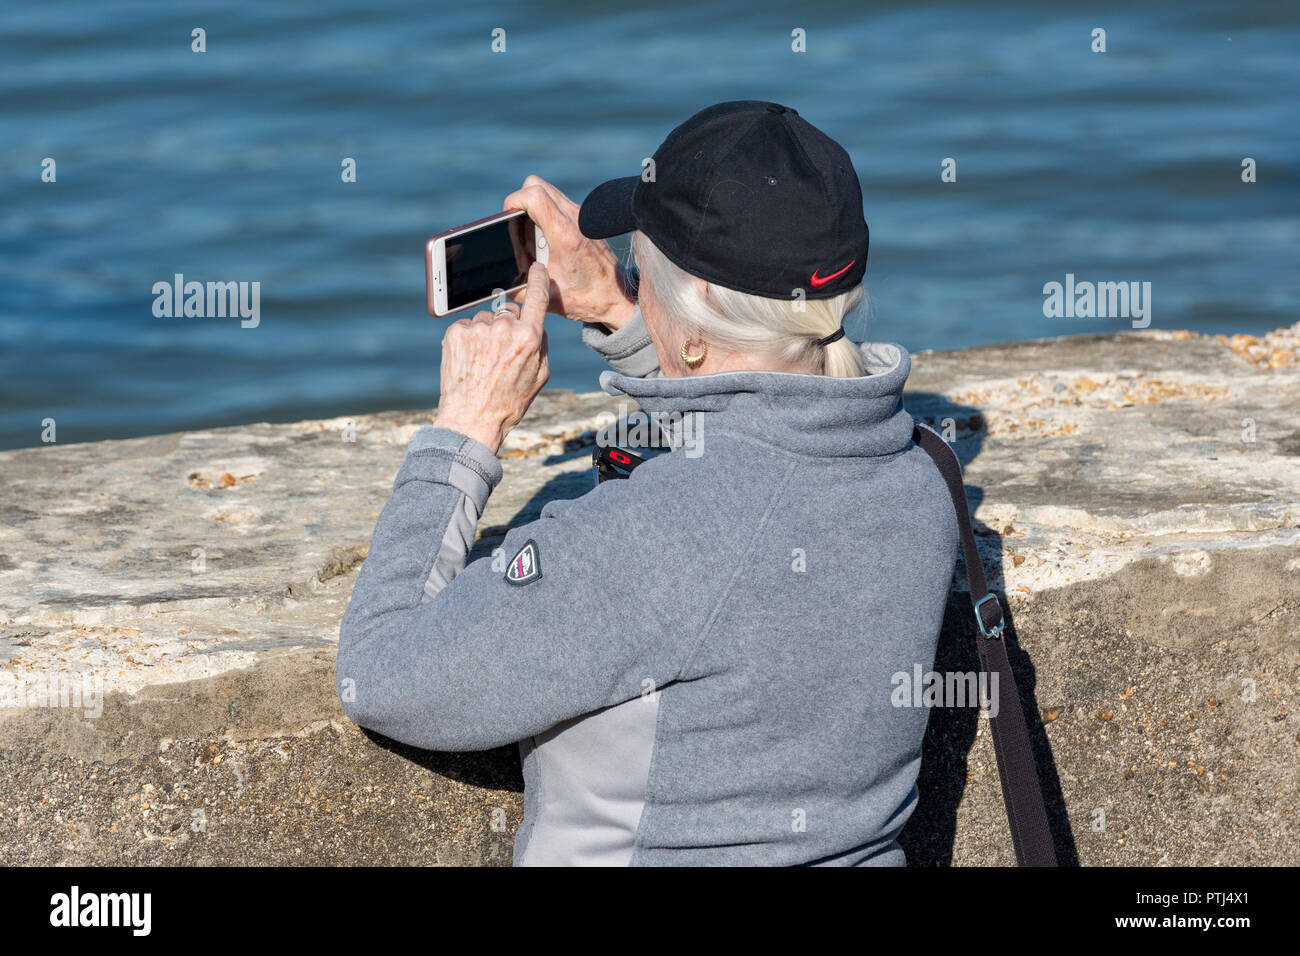 Più anziani o persone di mezza età silver surfer o donna lady utilizzando uno smartphone o un dispositivo mobile per scattare una fotografia o un'immagine. Foto Stock